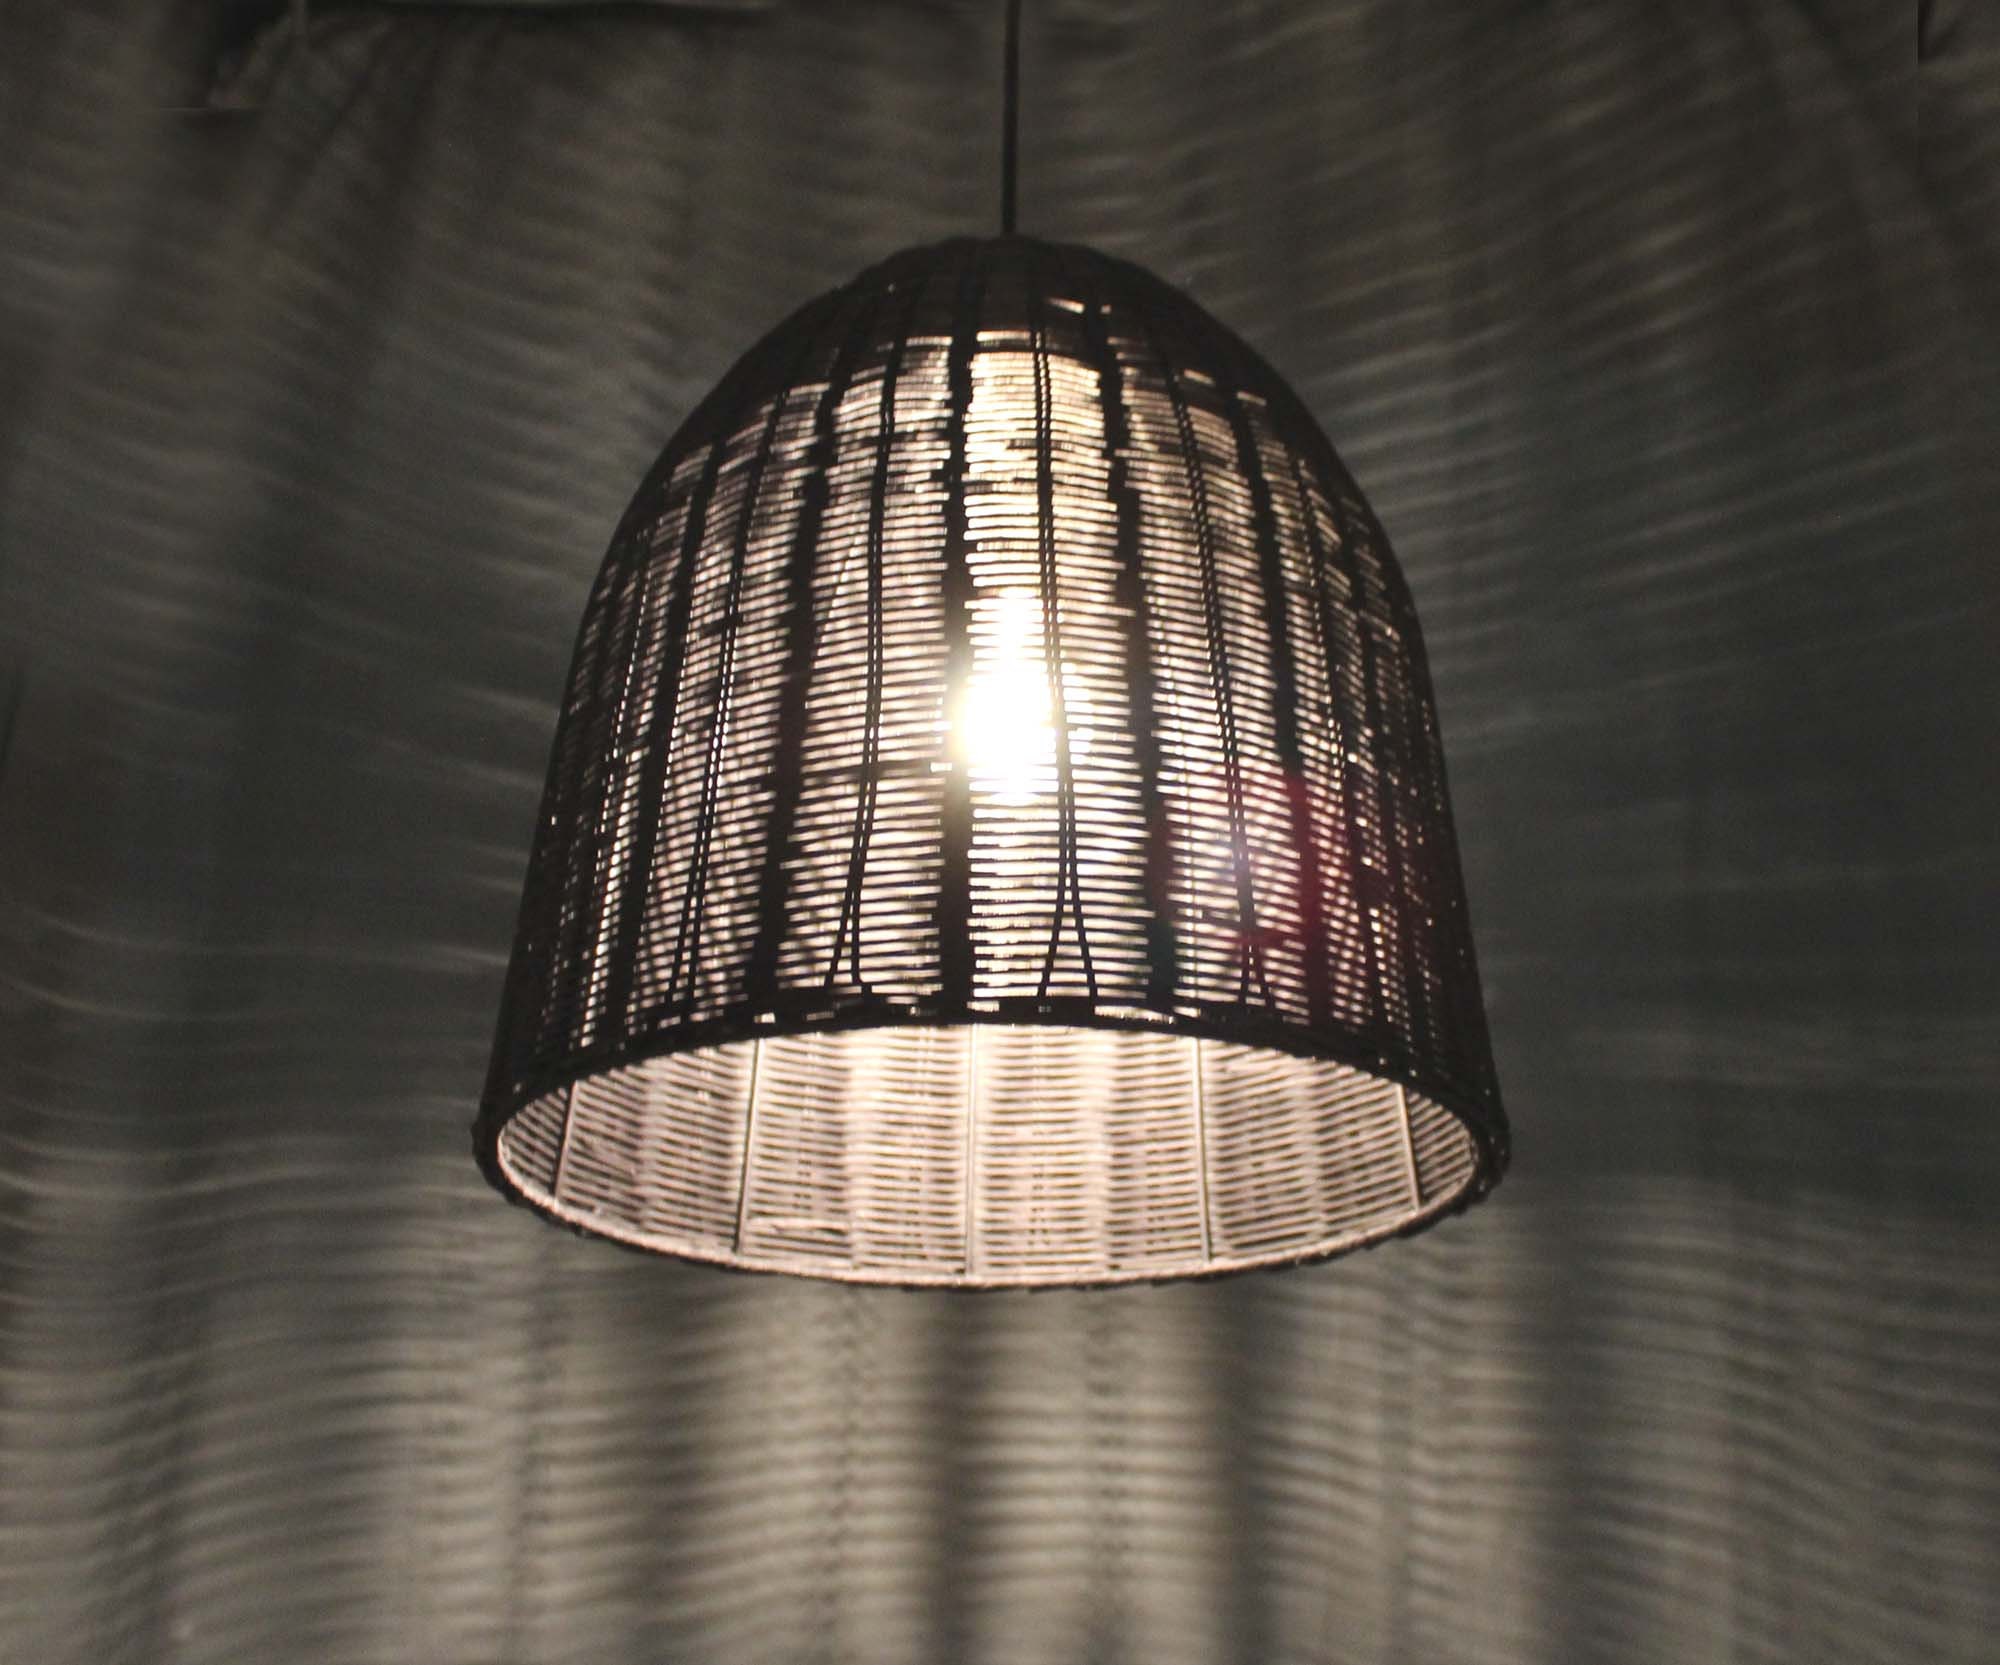 Rattan Basket Pendant Light with one Lampholder-110-240V50-60Hz Natural Rattan Color or Black Color